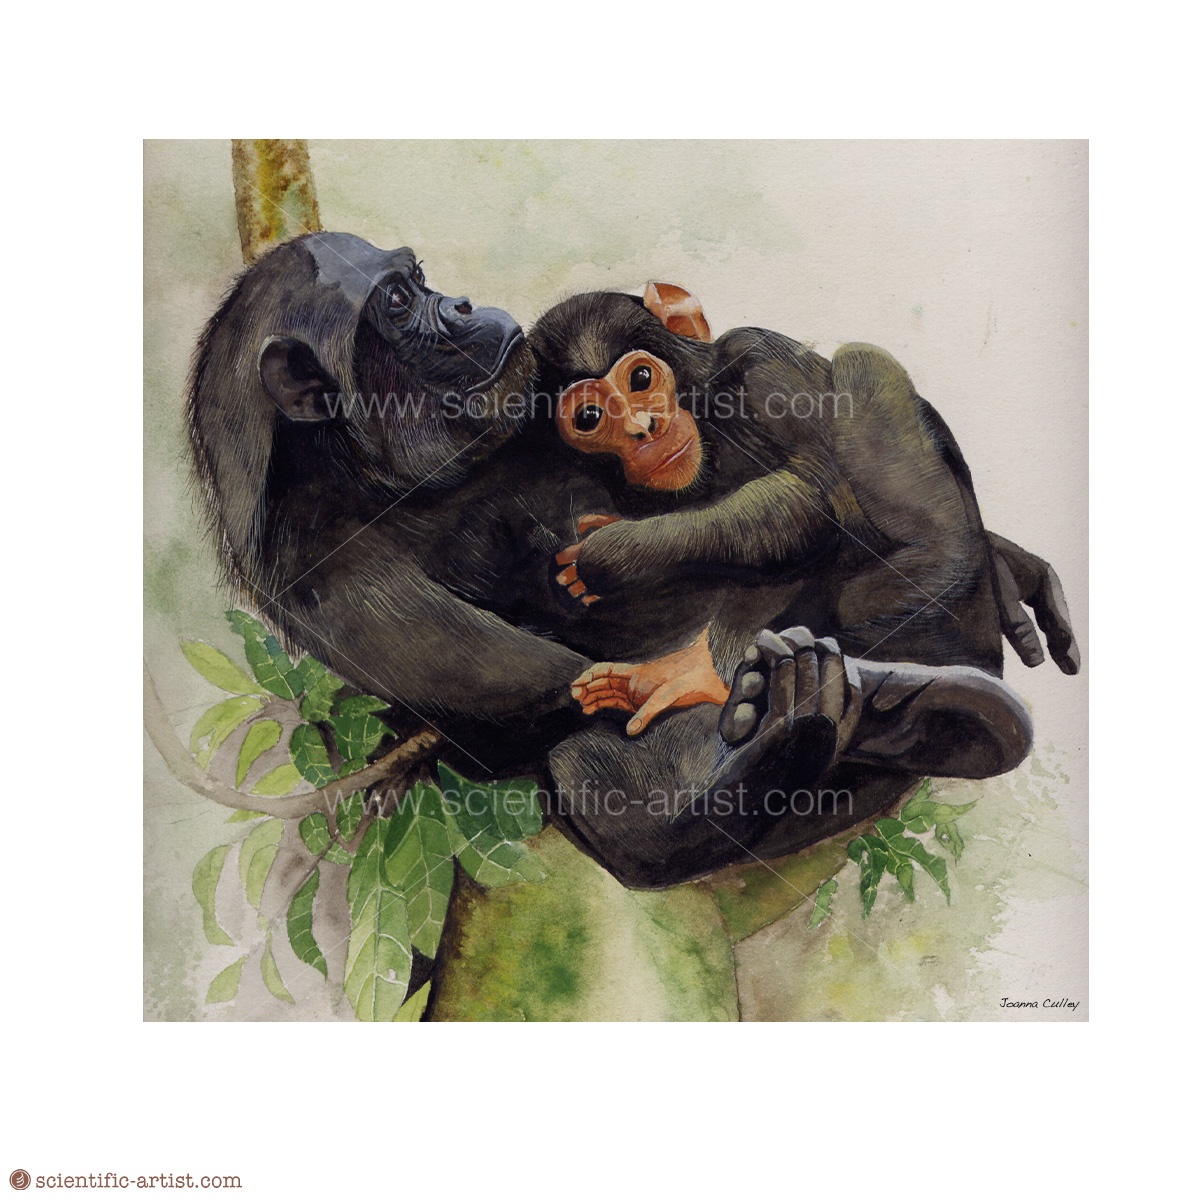 Chimpanzee And Infant Scientific Scientific Artist Joanna Culley Providing Art 